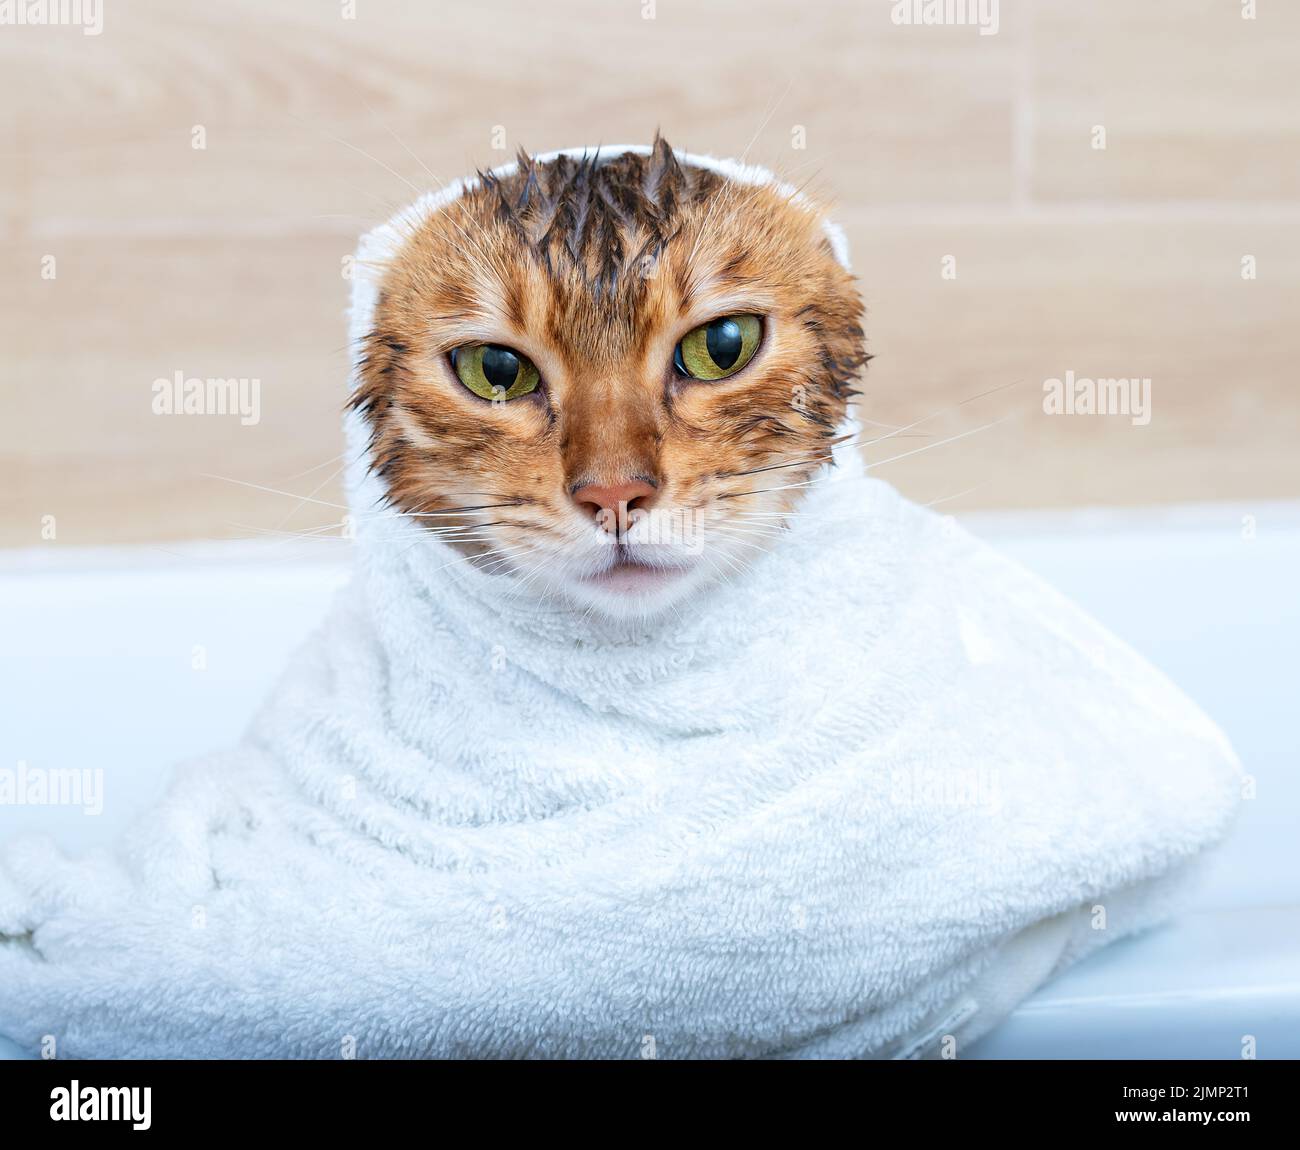 Drôle de chat Bengale humide après un bain, enveloppé dans une serviette blanche Banque D'Images